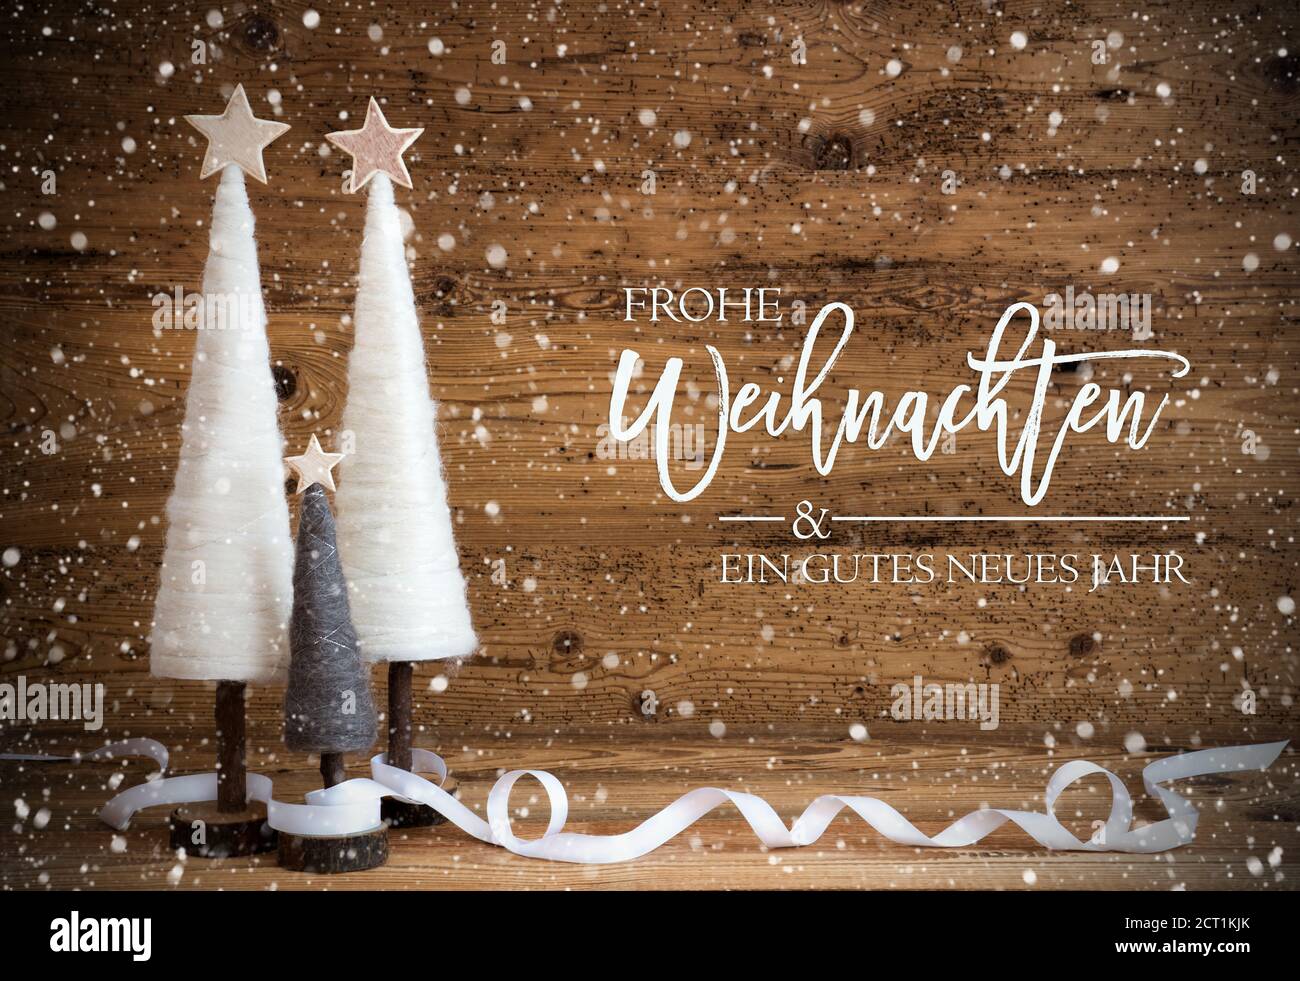 Árbol de Navidad Blanco, Gutes Neues Jahr significa Feliz año Nuevo, copos de nieve Foto de stock